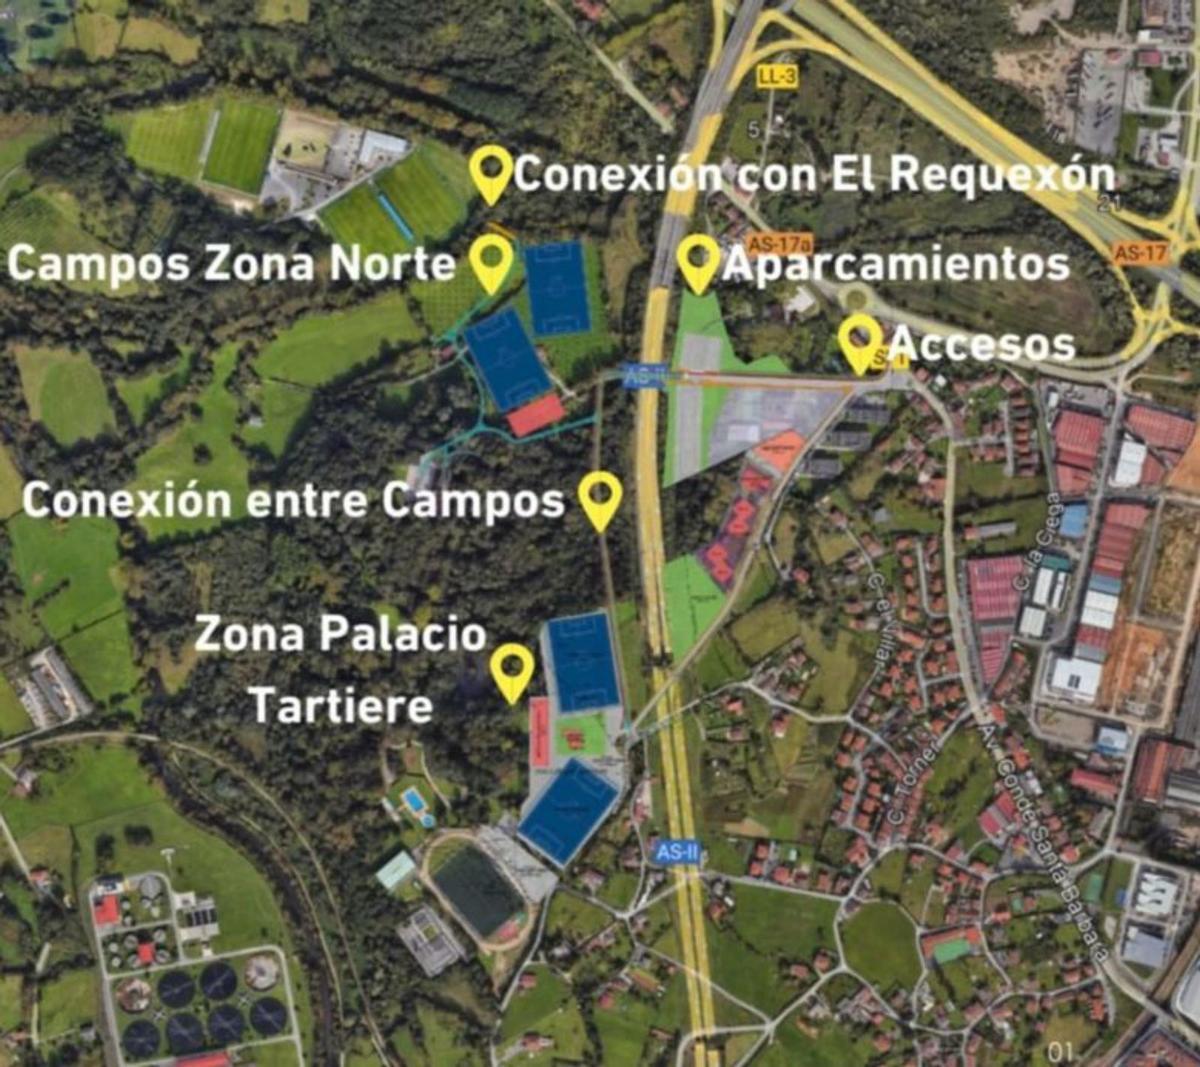 Cuatro campos y mejores accesos: así trata Siero de convencer al Oviedo